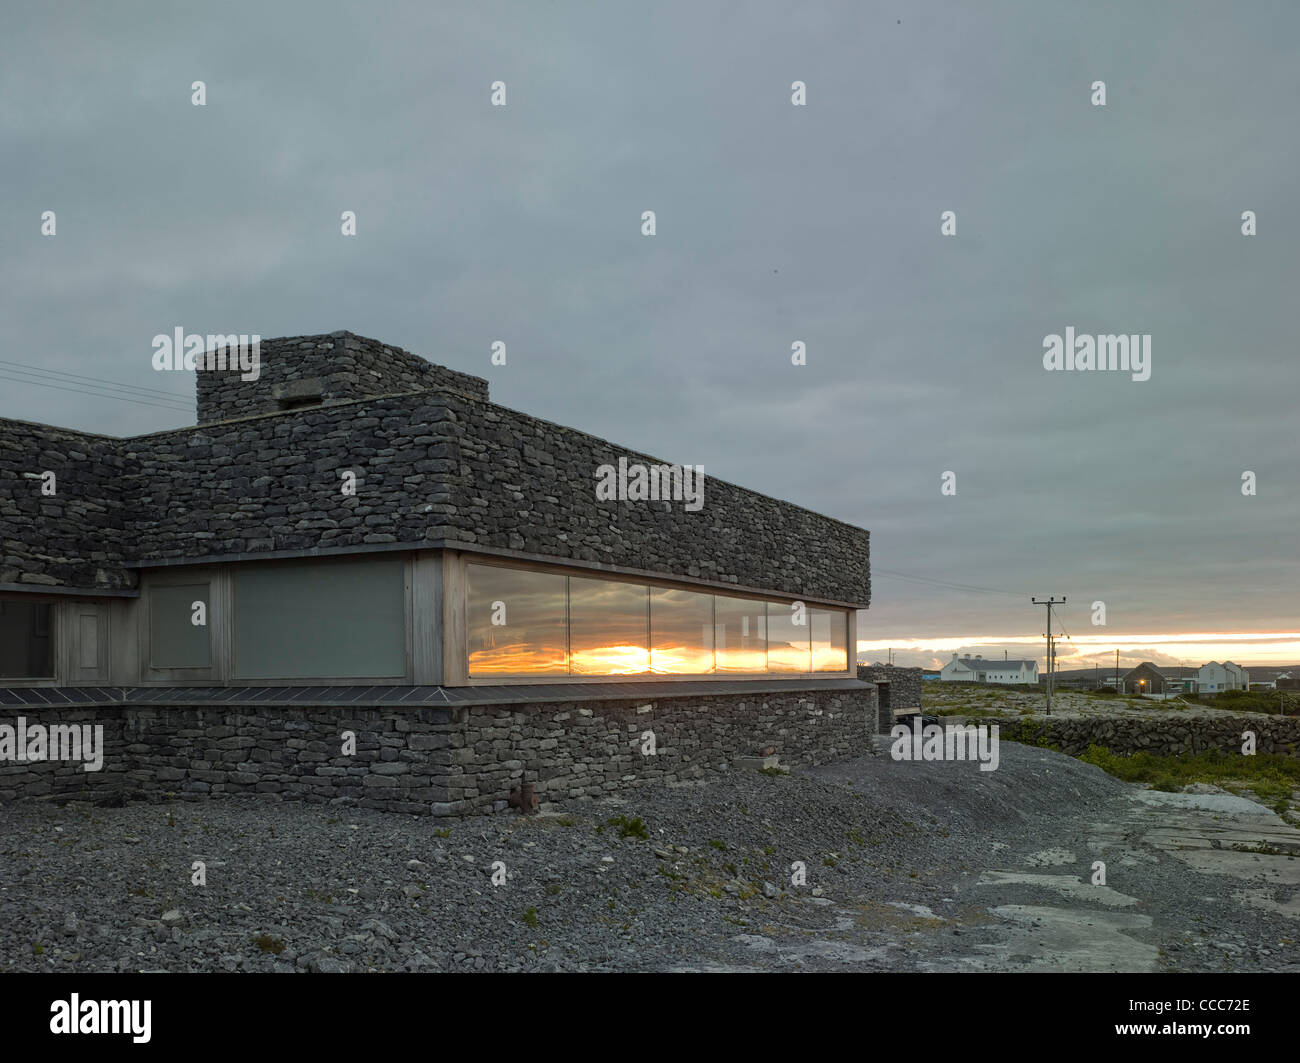 Impostare su una delle più piccole isole Aran in Galway Bay al largo della costa occidentale dell'Irlanda,questo splendido edificio in pietra locale Foto Stock